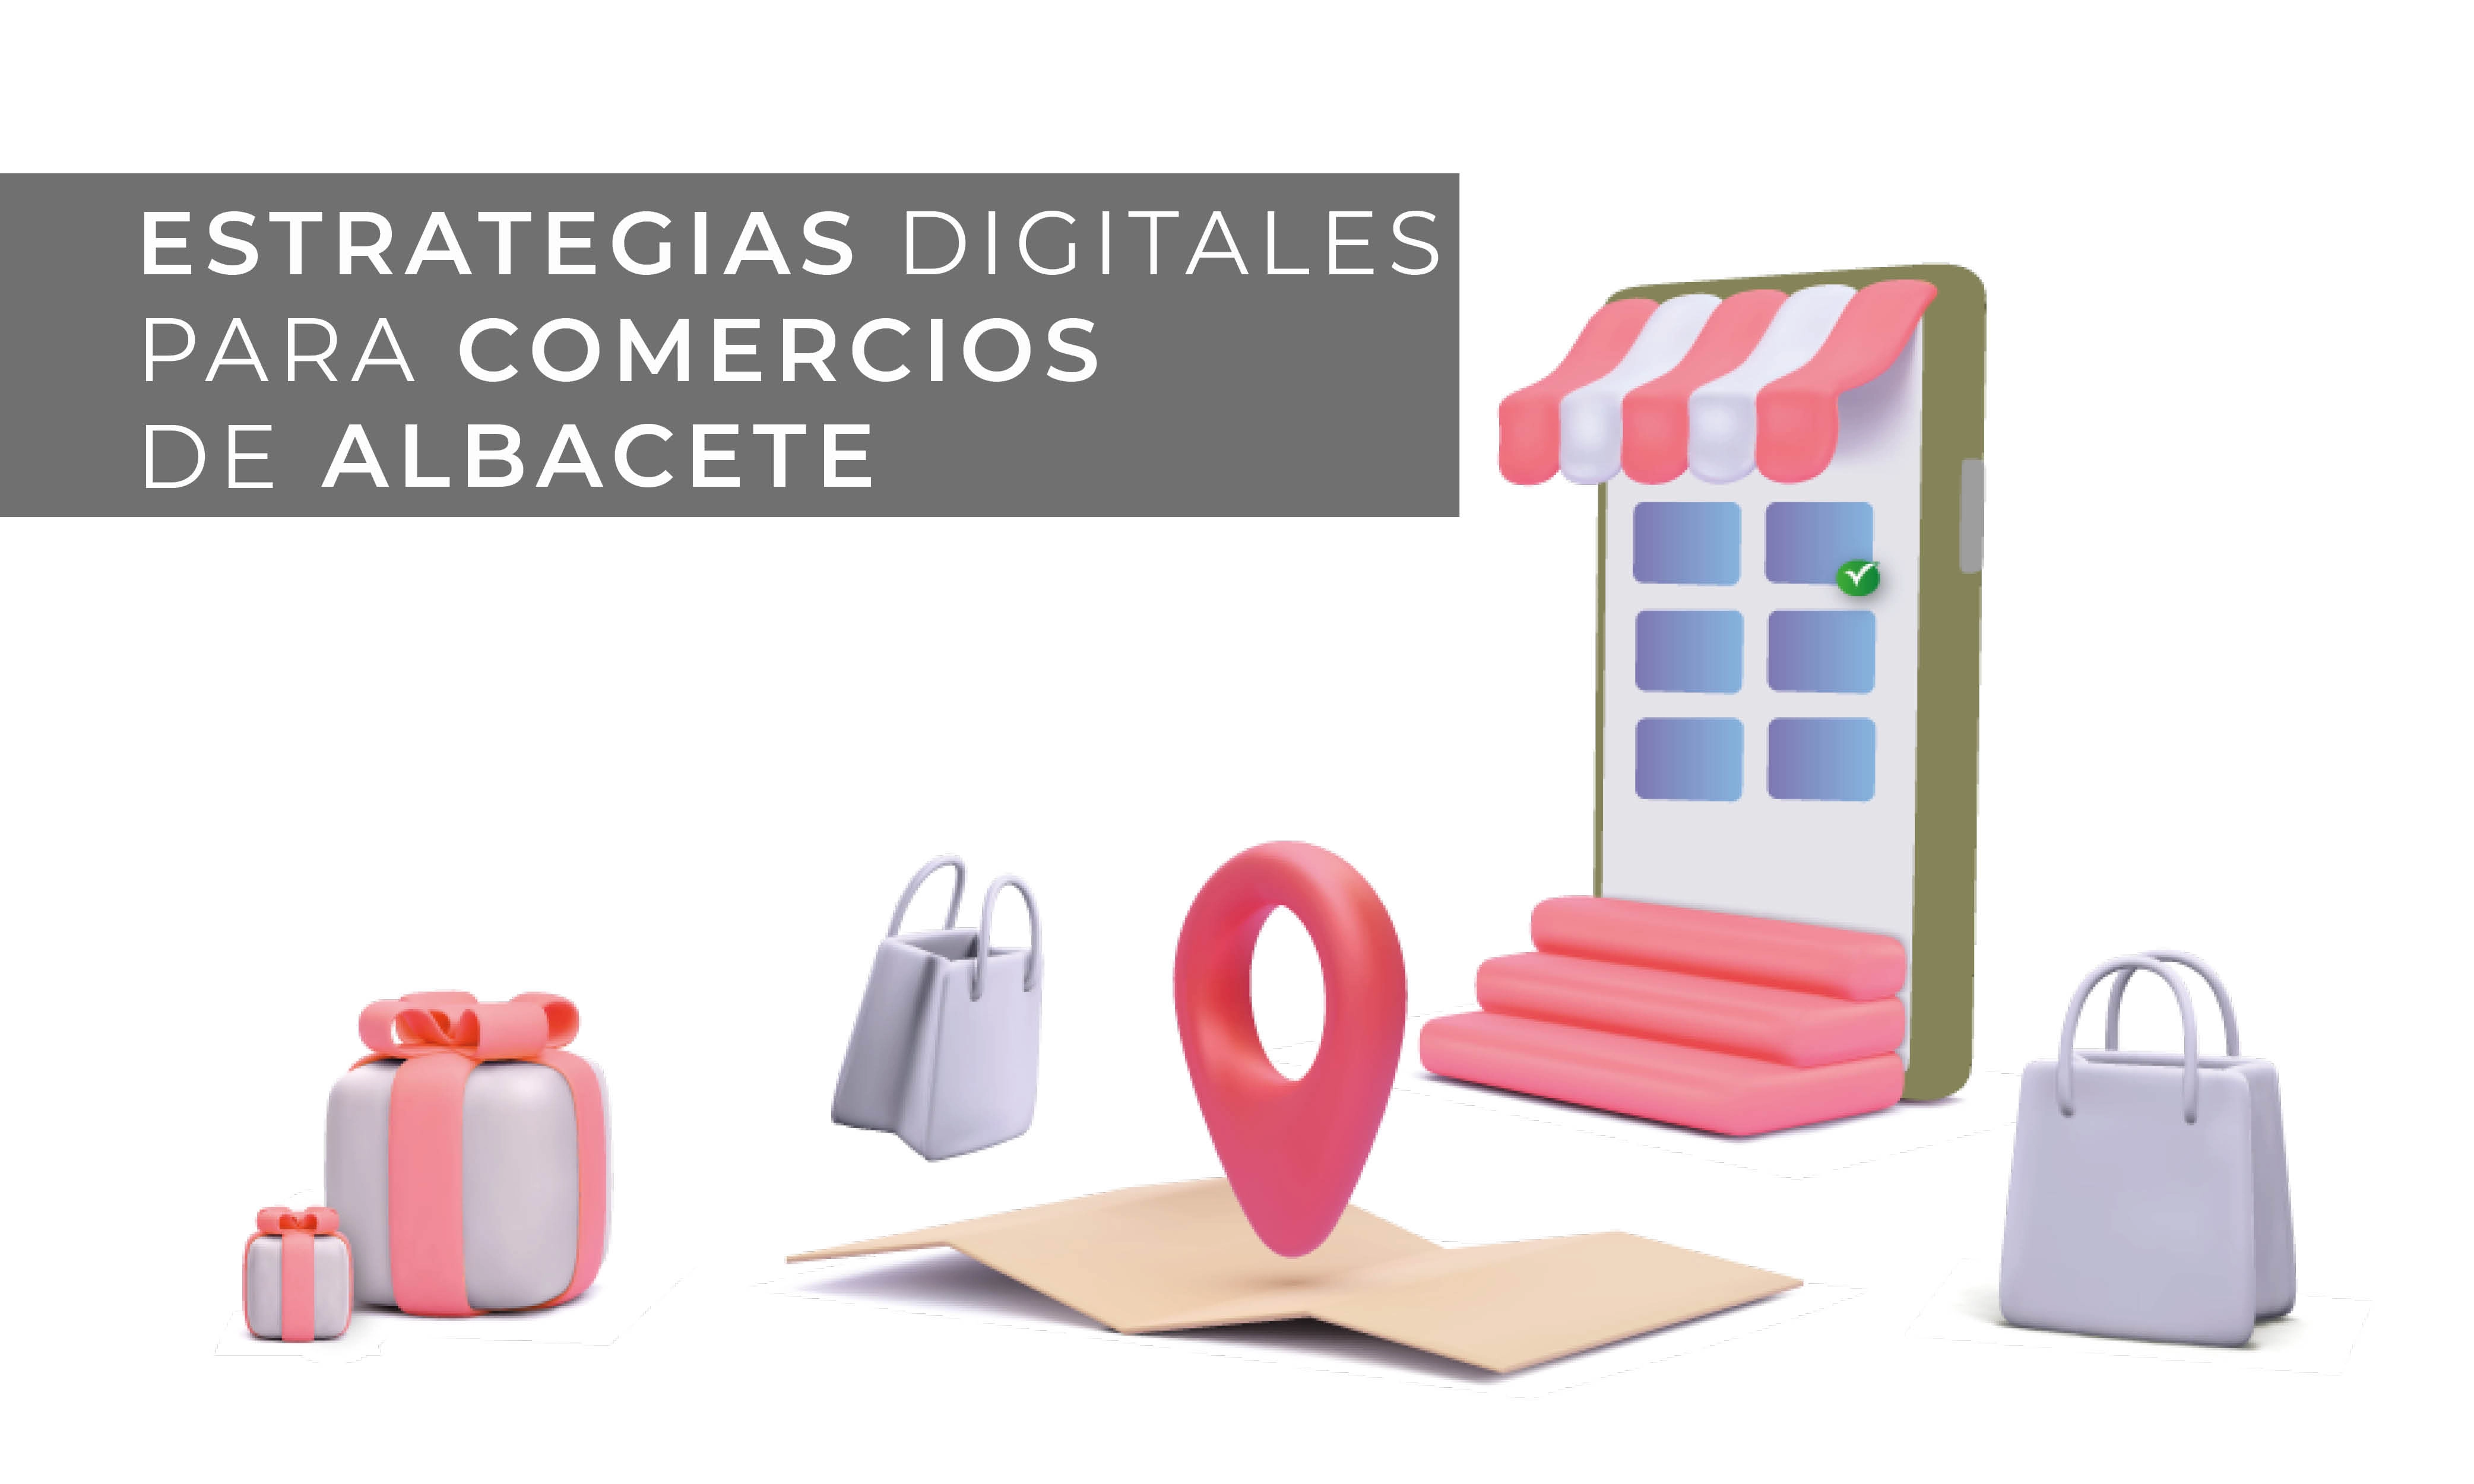 Estrategias digitales para emprendedores y pequeñas o medianas empresas Albacete